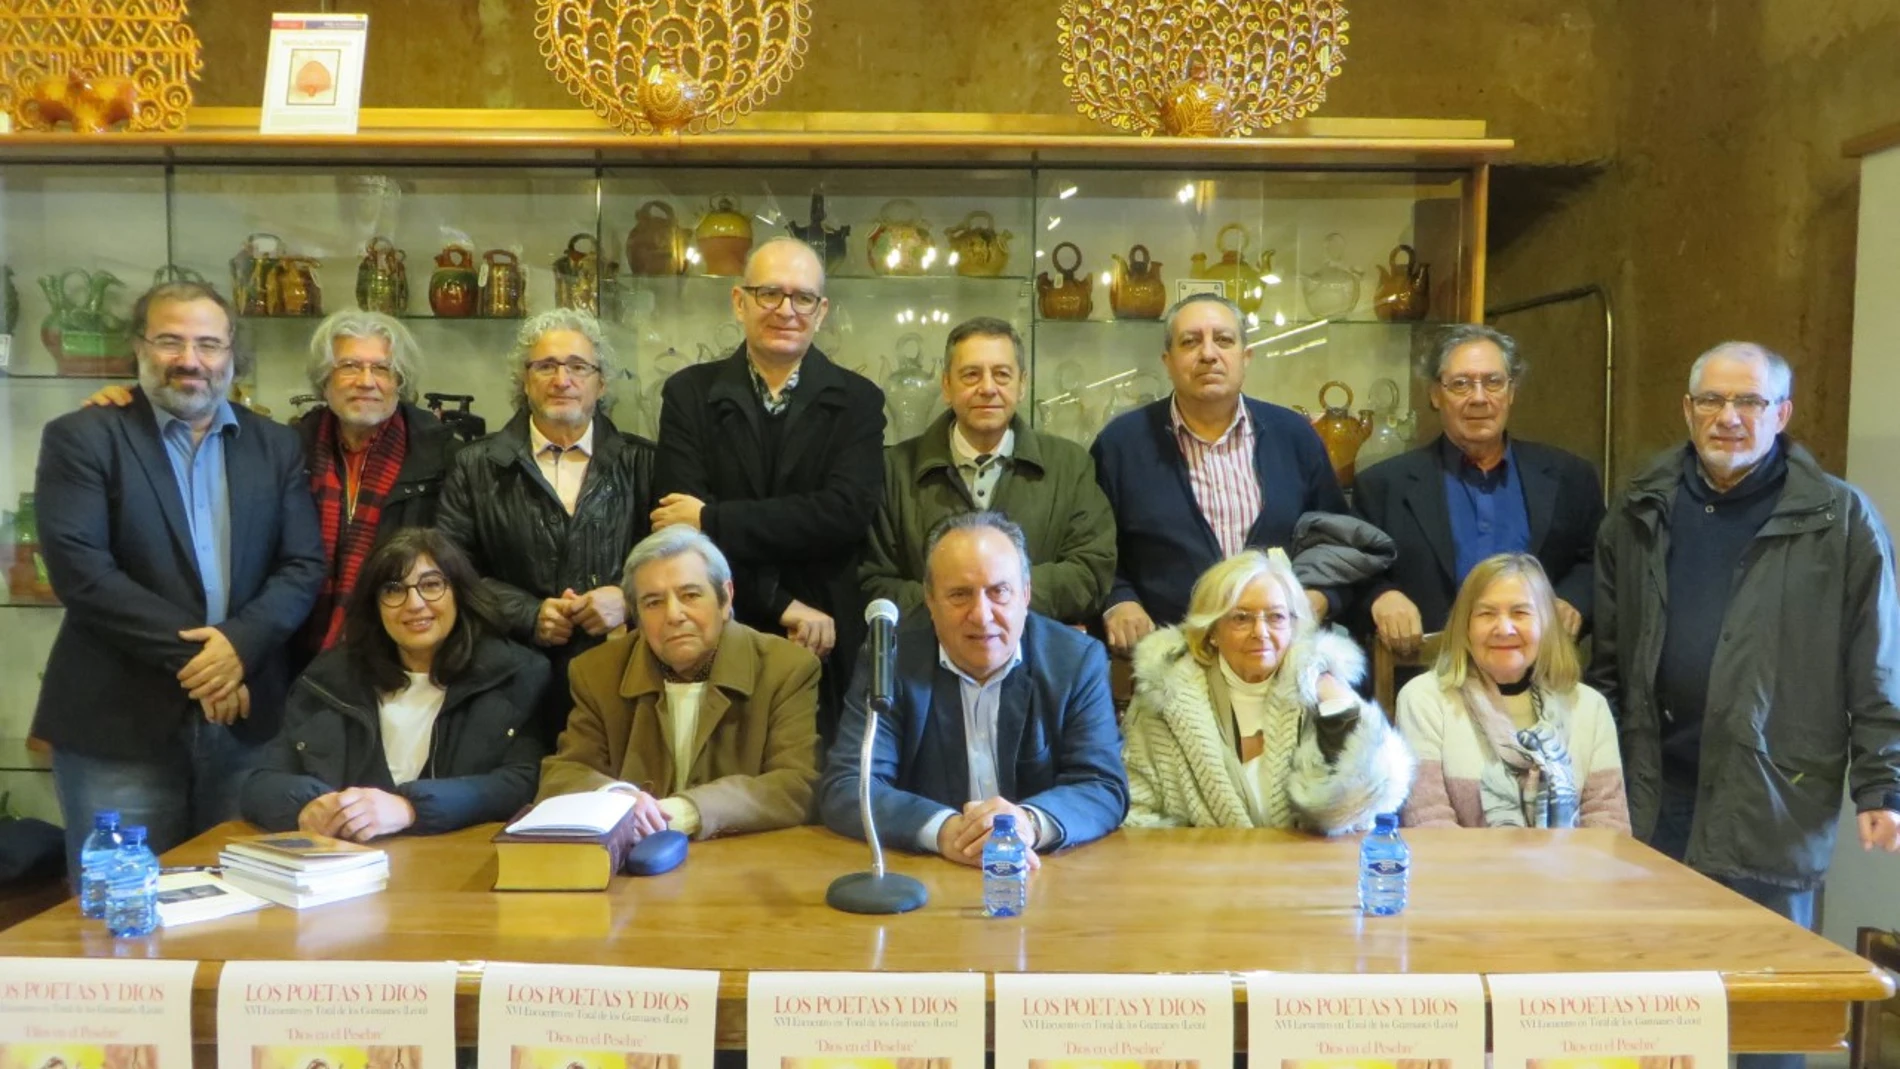 Participantes en el encuentro de poesía cristiana, que coordinan Manuel Corral y Alfredo Pérez Alencart